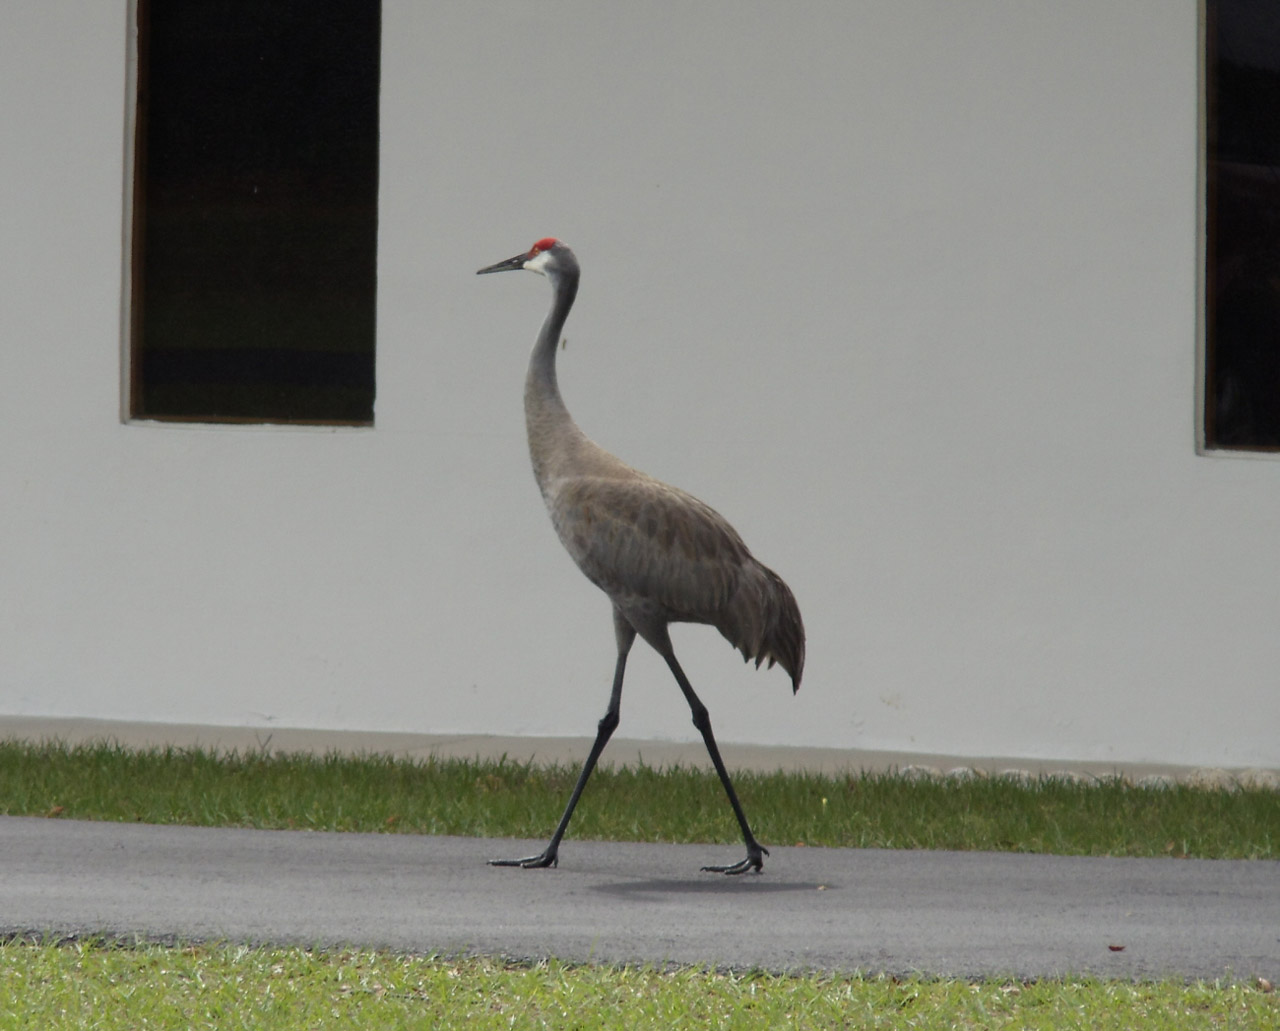 A Sandhill Crane strolling along a driveway